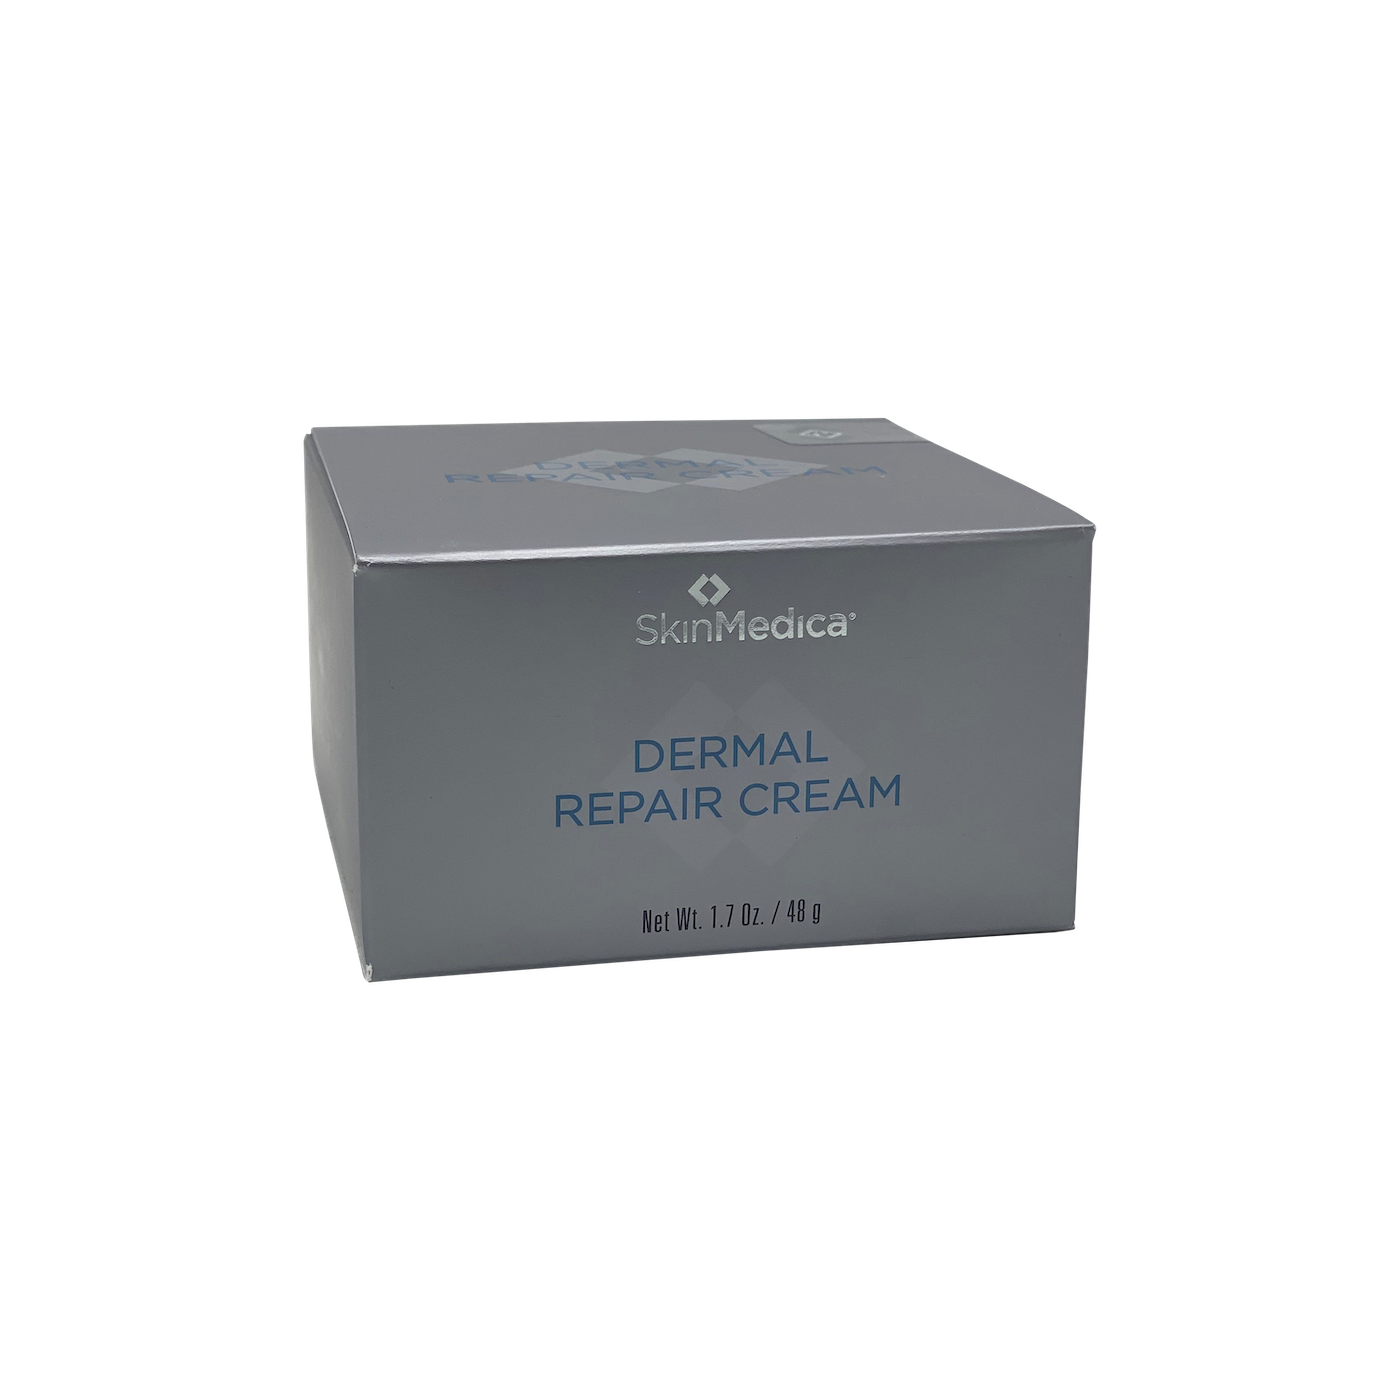 dermal repair cream for men's anti-aging skin care